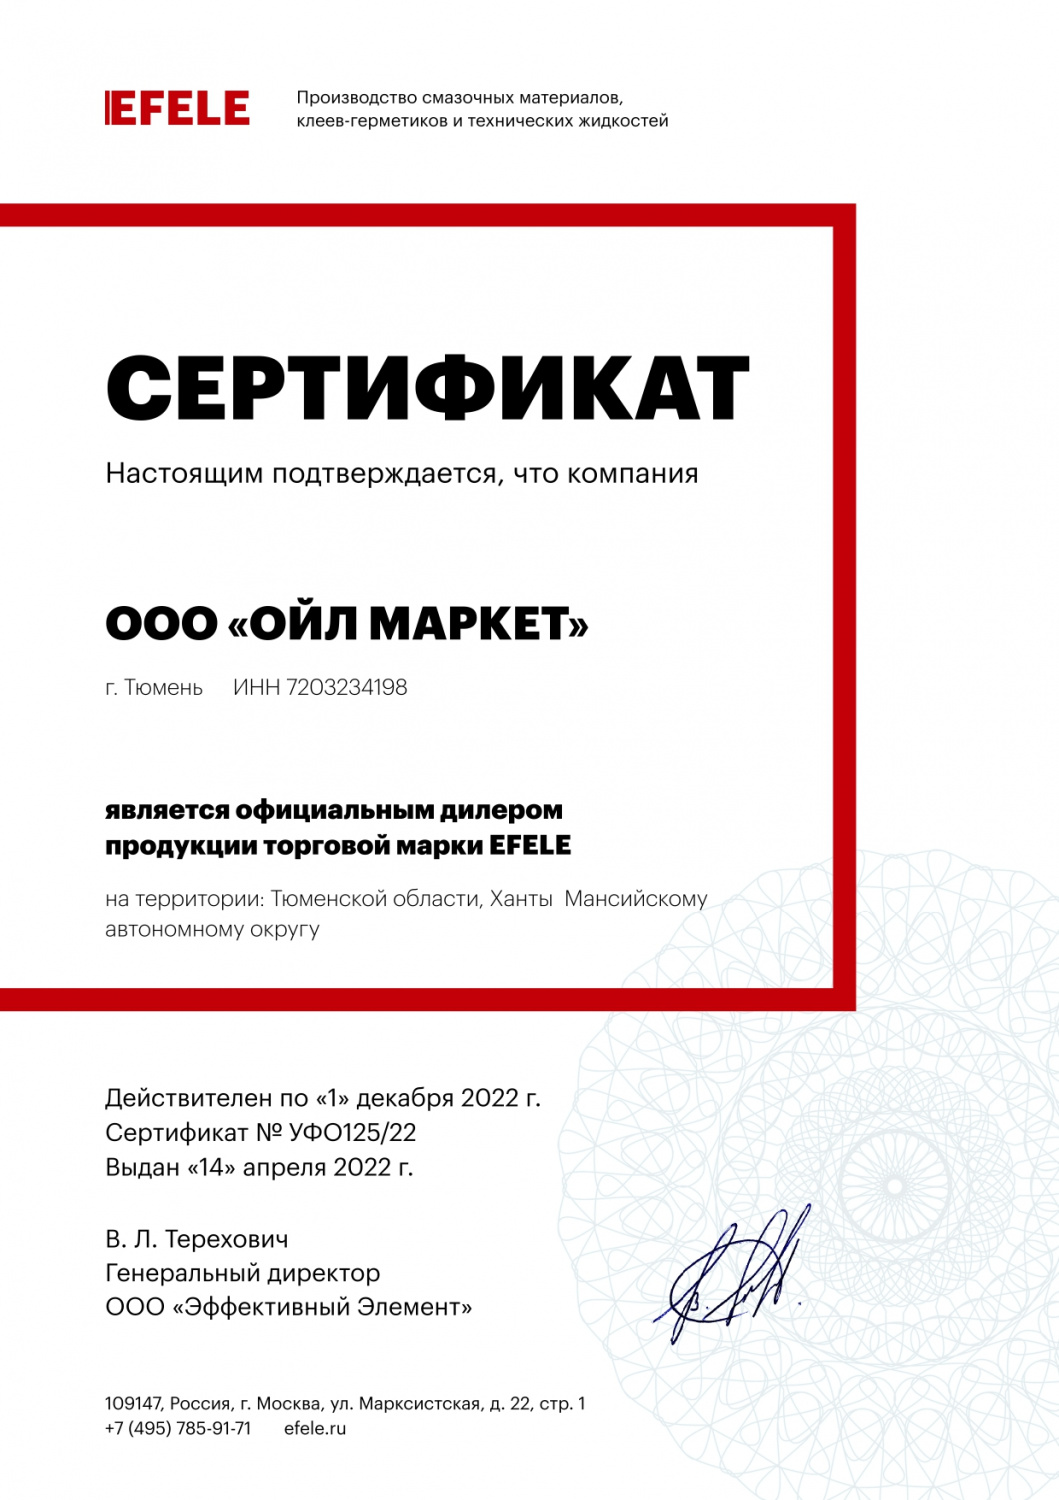 Сертификат официального партнера EFELE